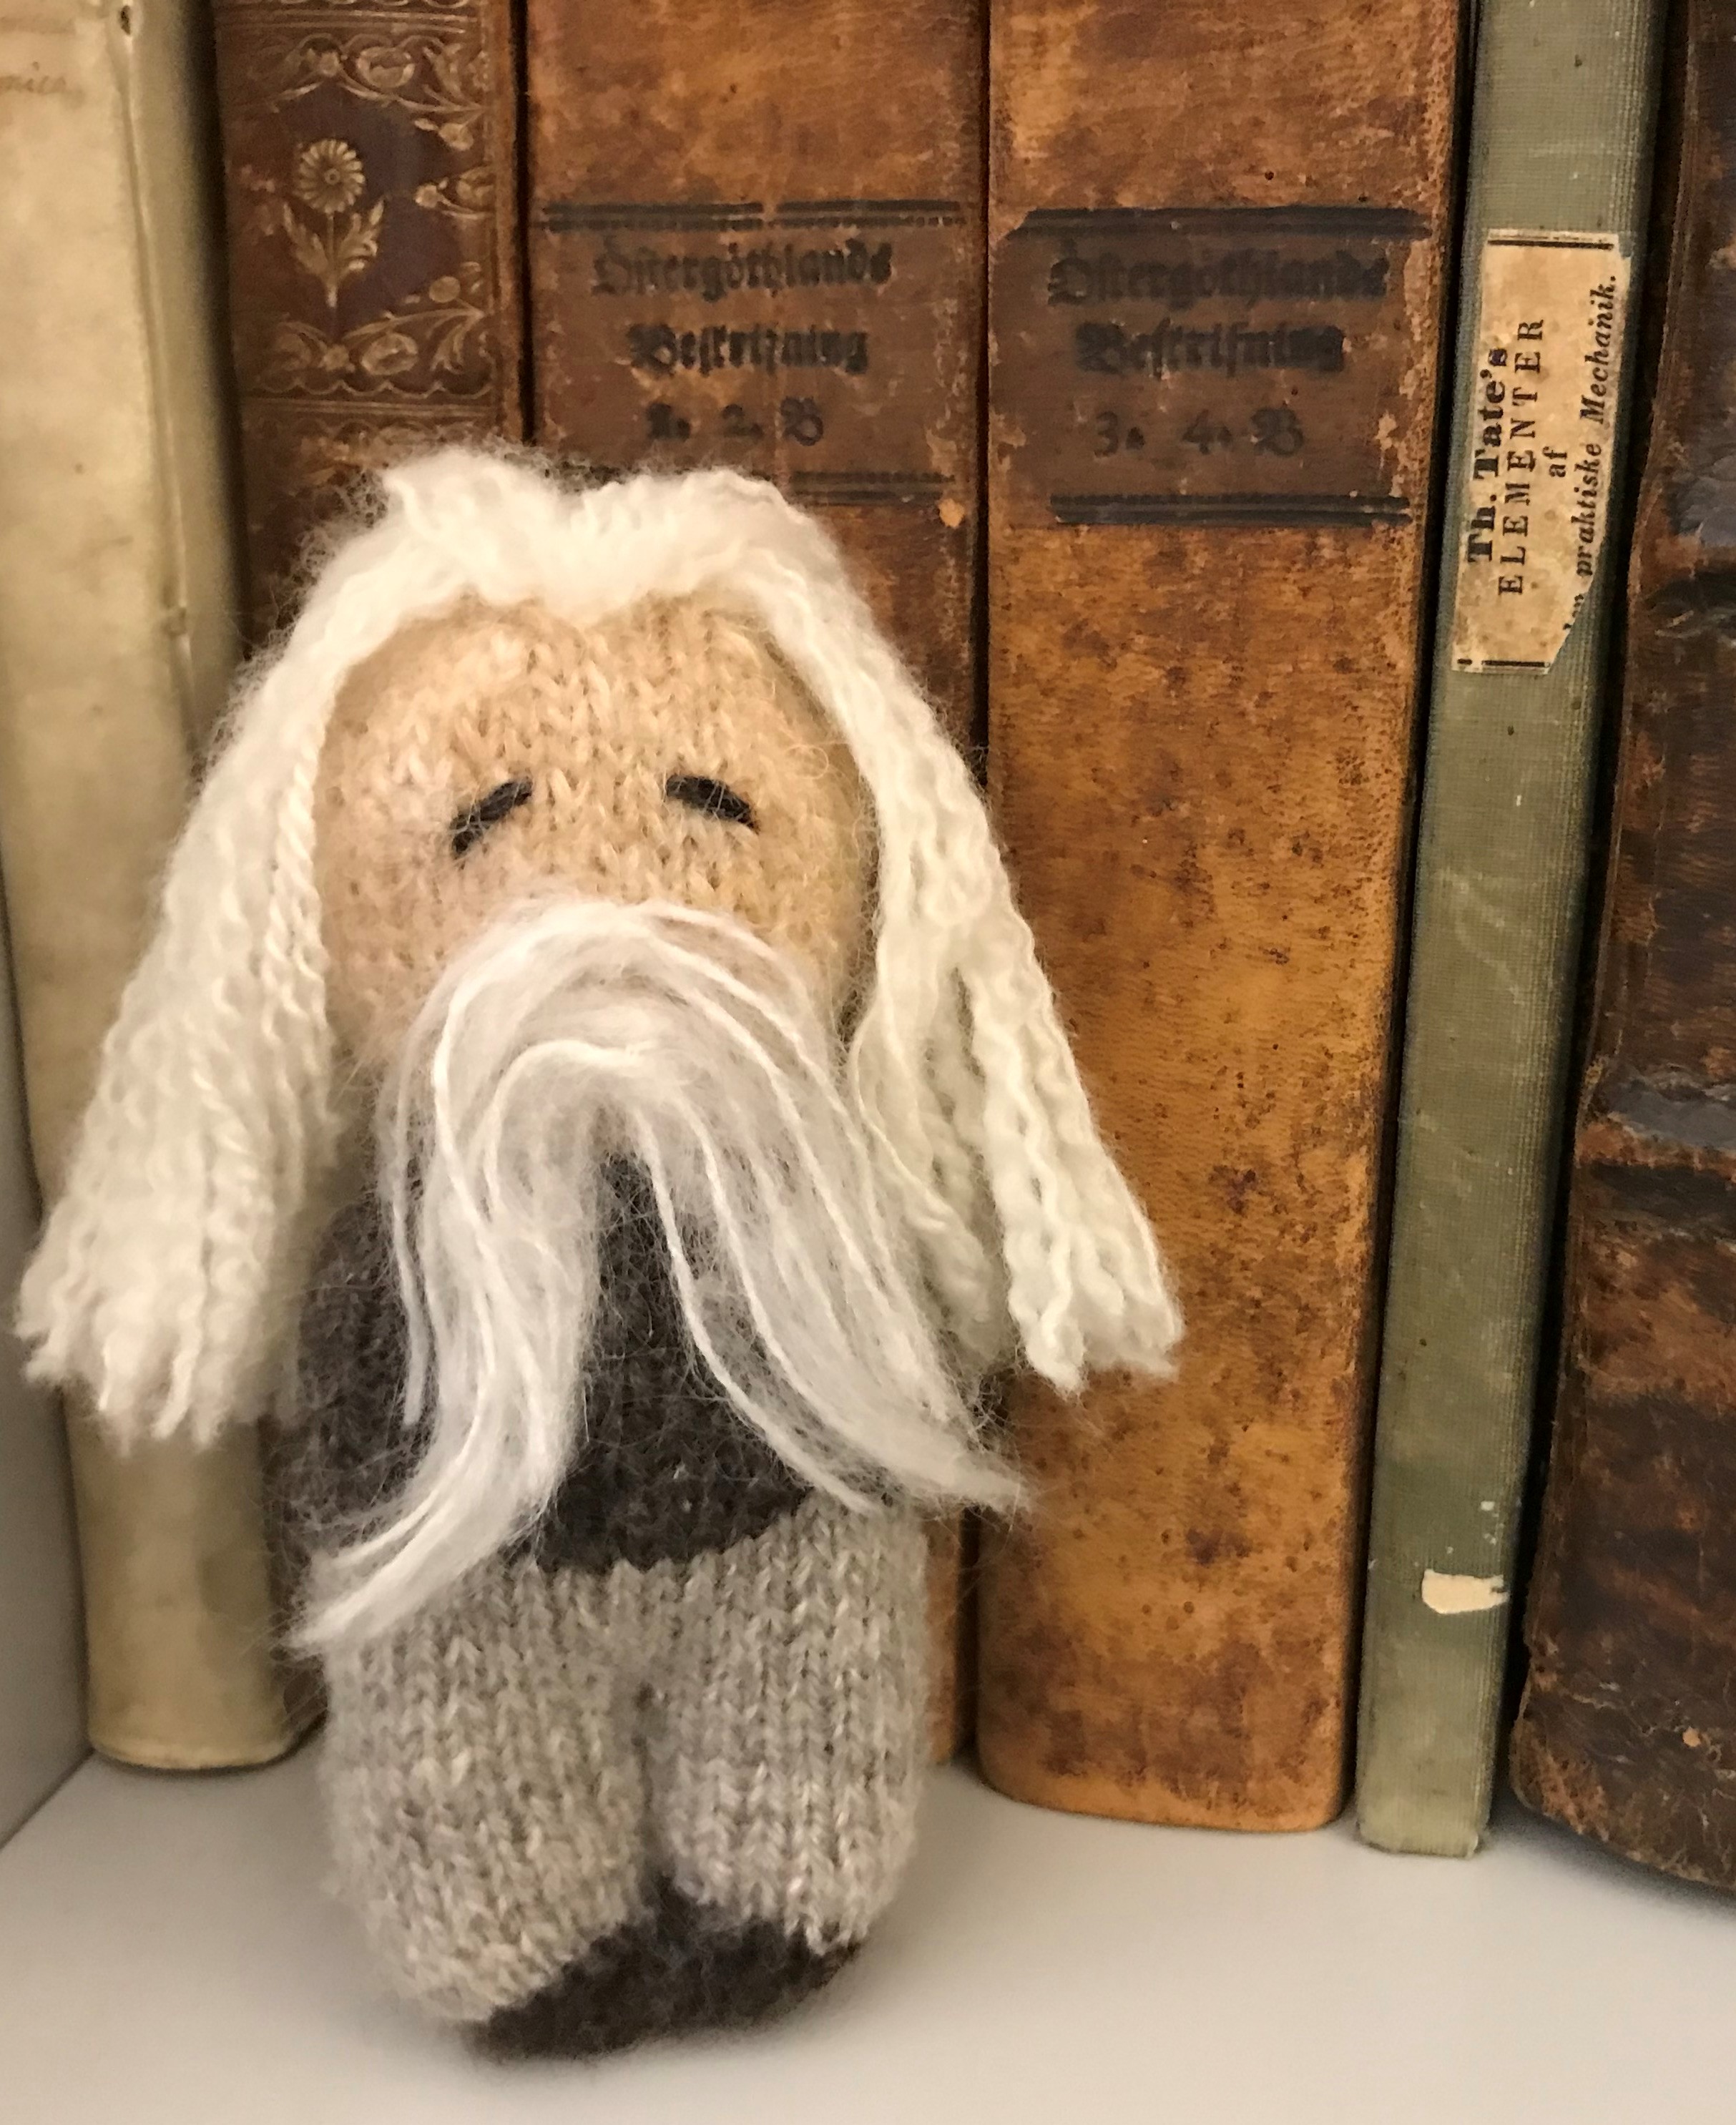 En stickad liten docka med långt hår och skägg står på en hylla lutad mot ett par gamla bokryggar.